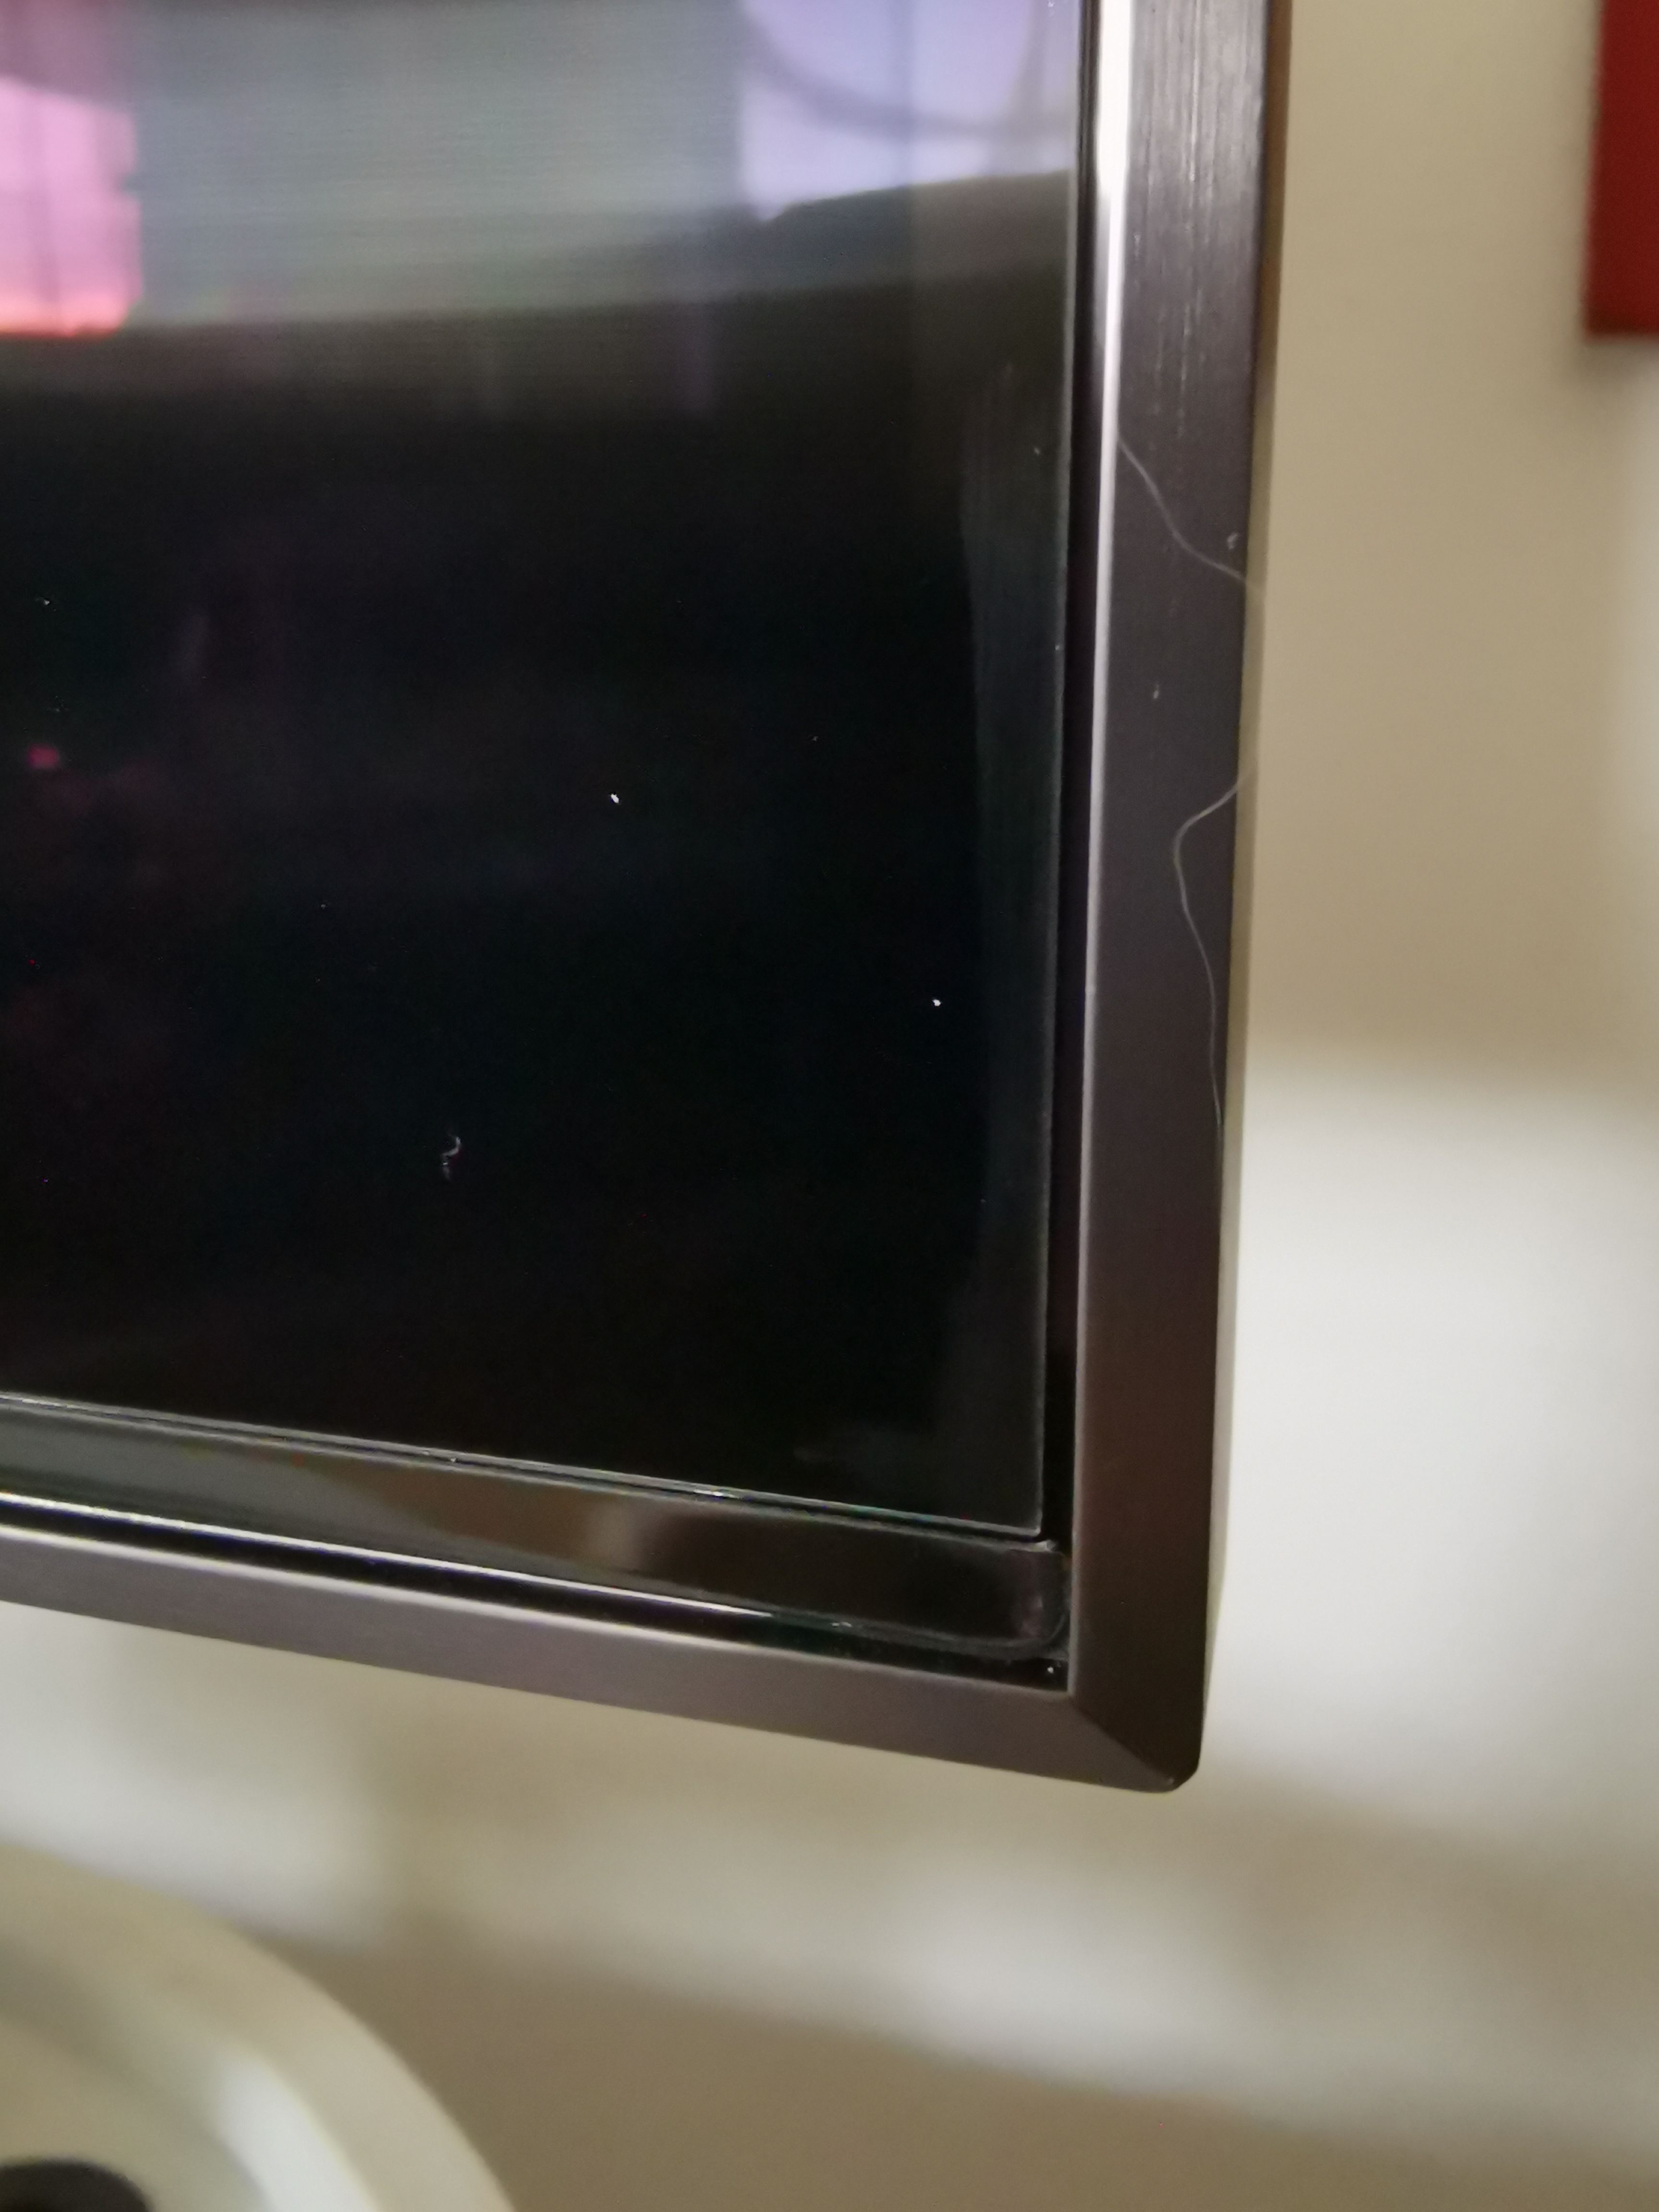 65 Zoll Q85R Flecken im Display Folie? - Samsung Community